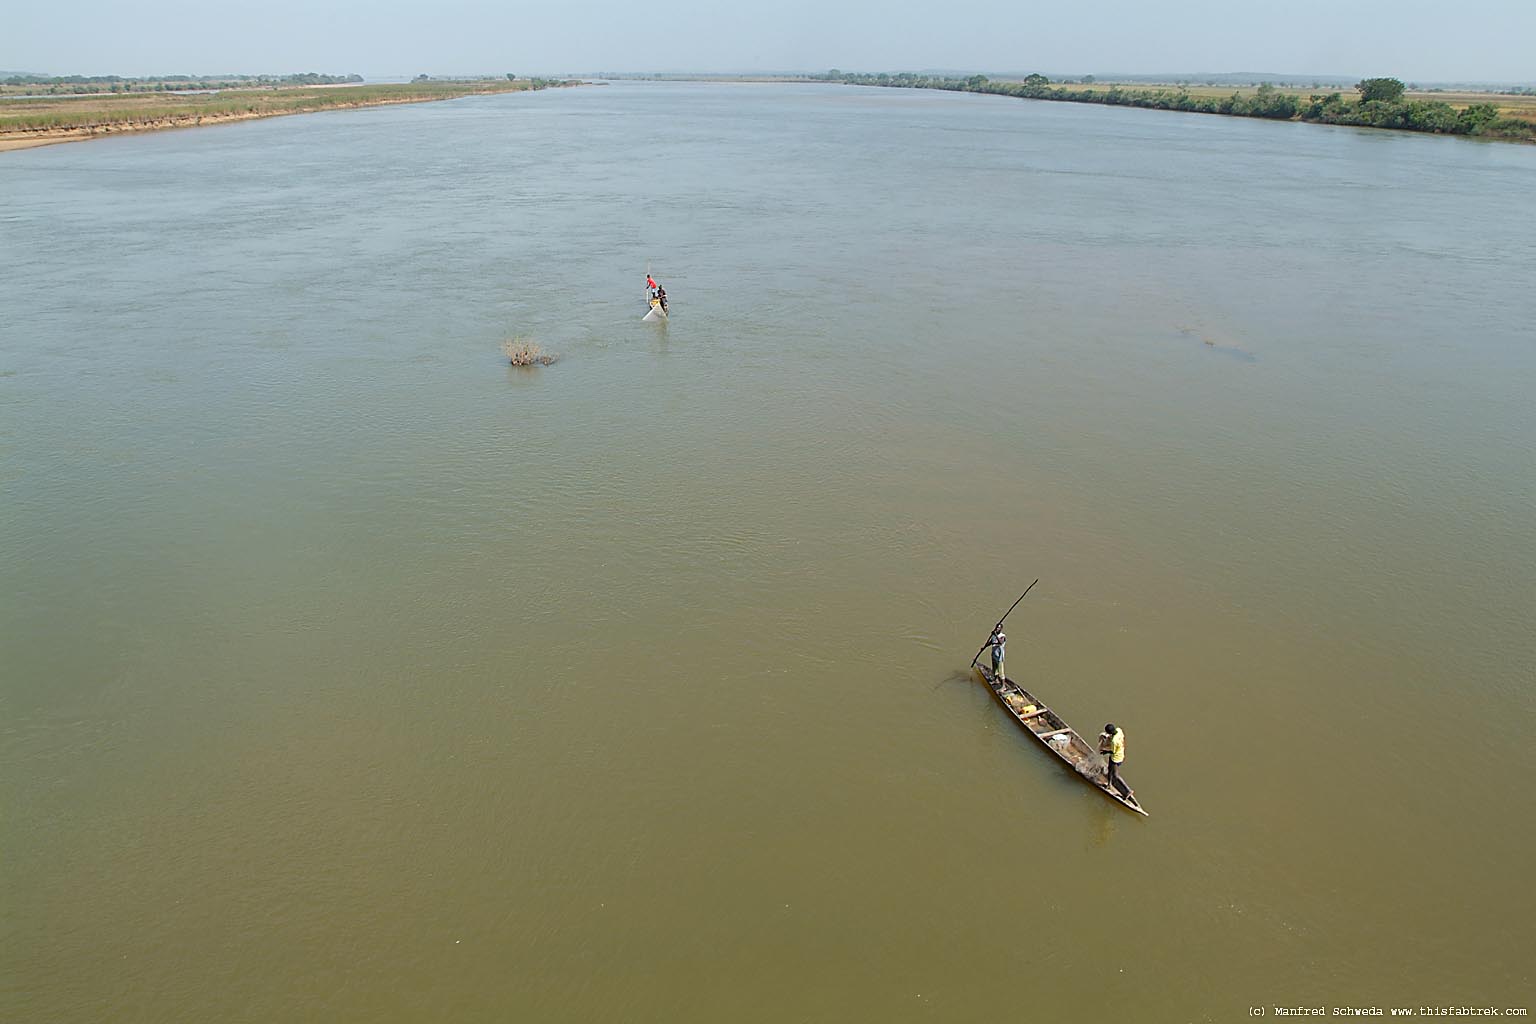 le fleuve du niger